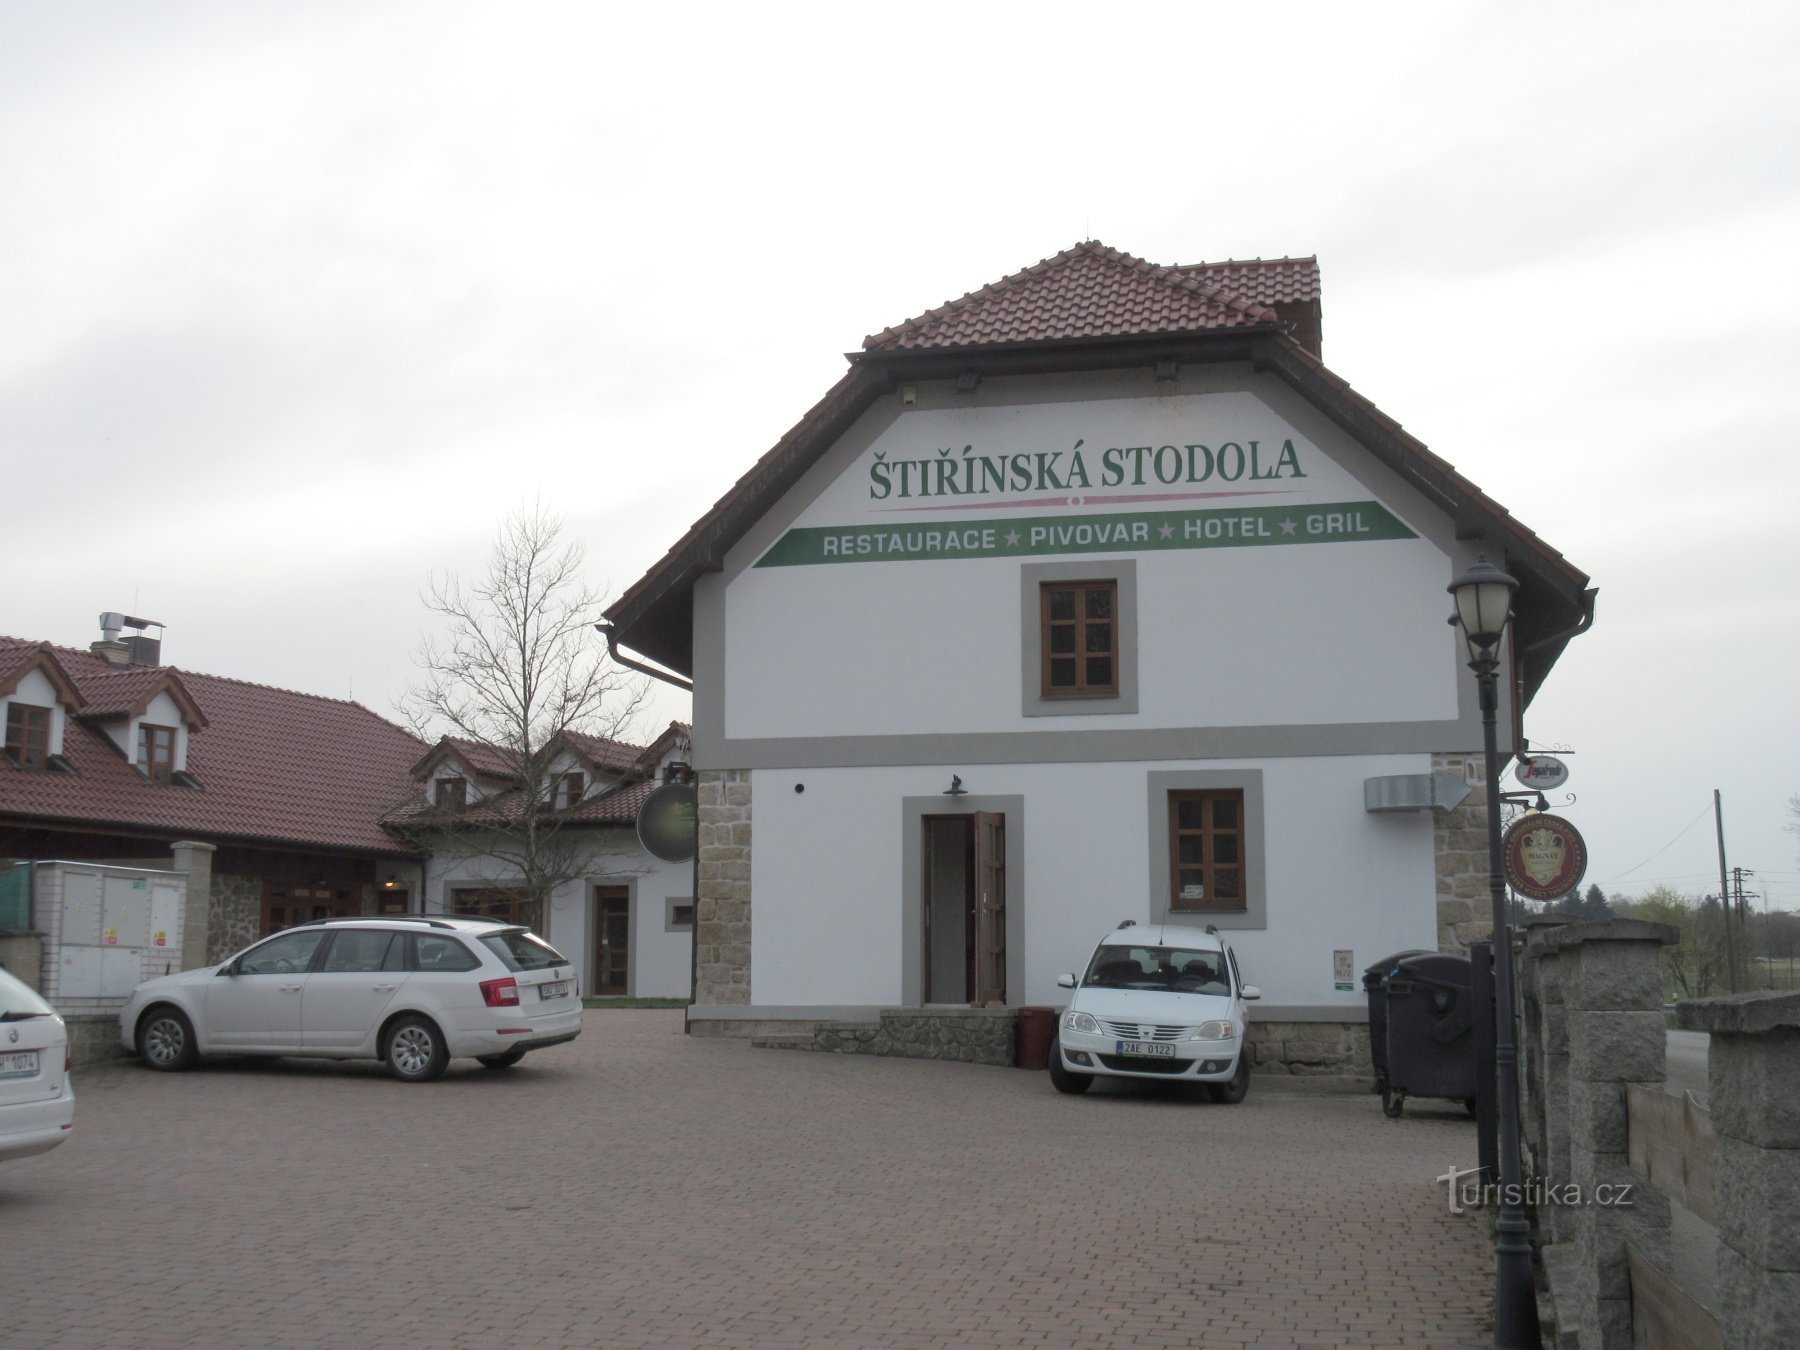 Štiřín – κάστρο, ζυθοποιείο